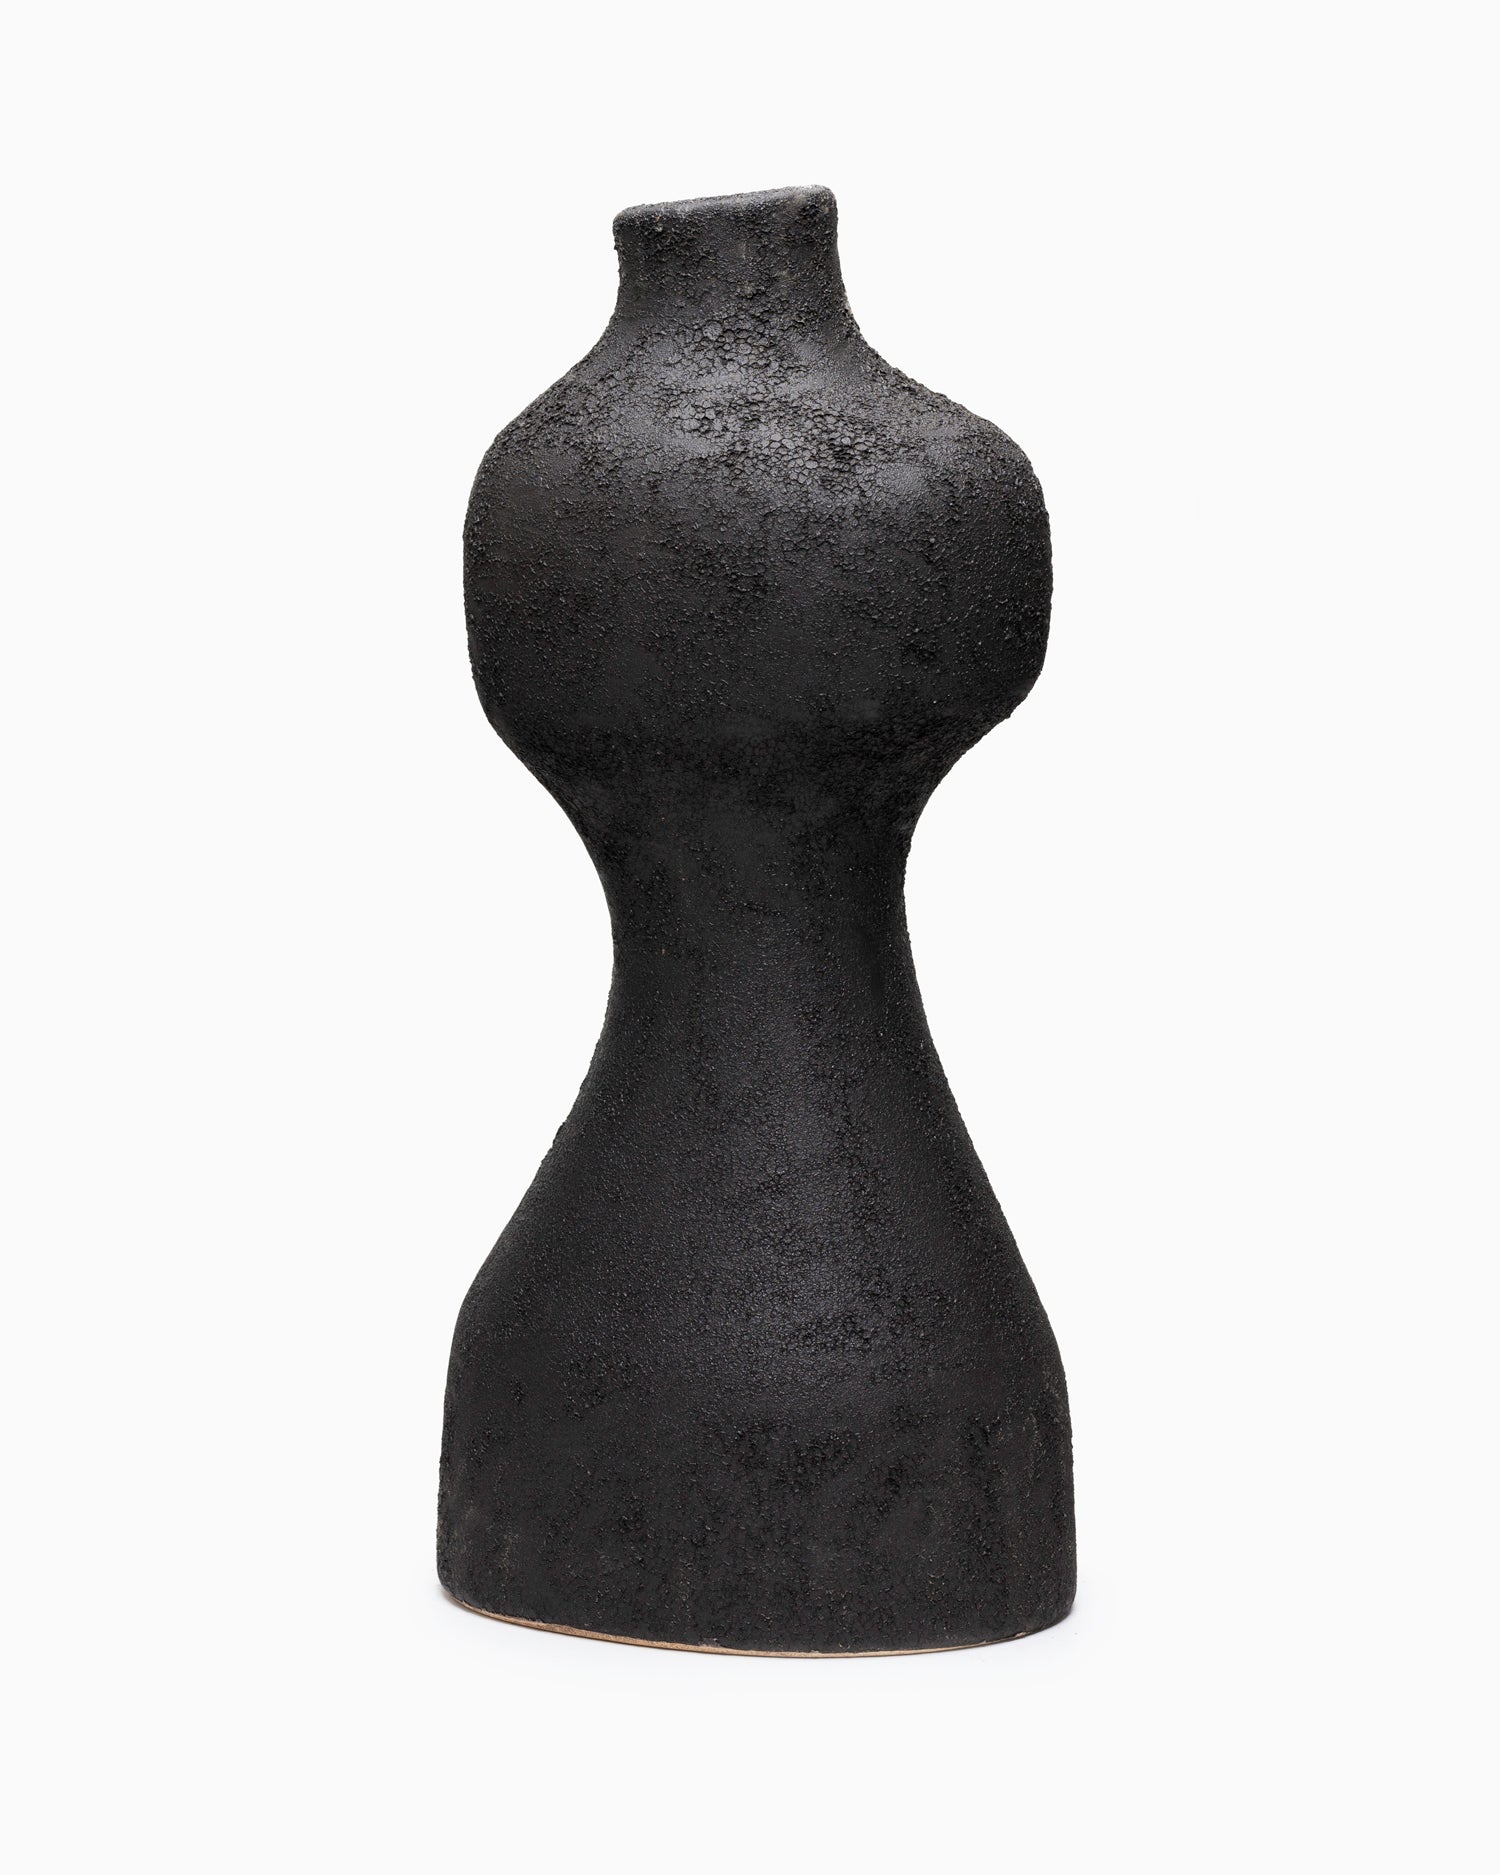 Medium Yara Vase - Rustic Iron